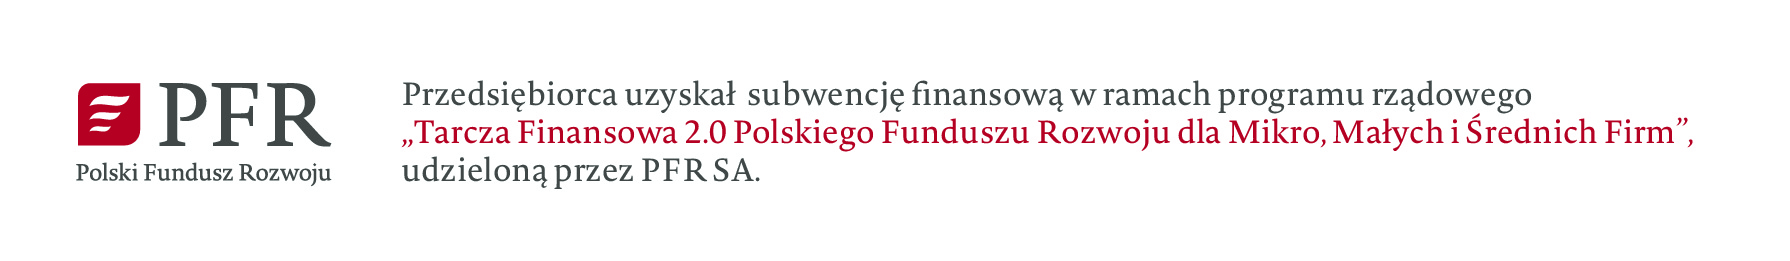 Grafika przedstawia Logo Polskich Funduszy Rozwoju